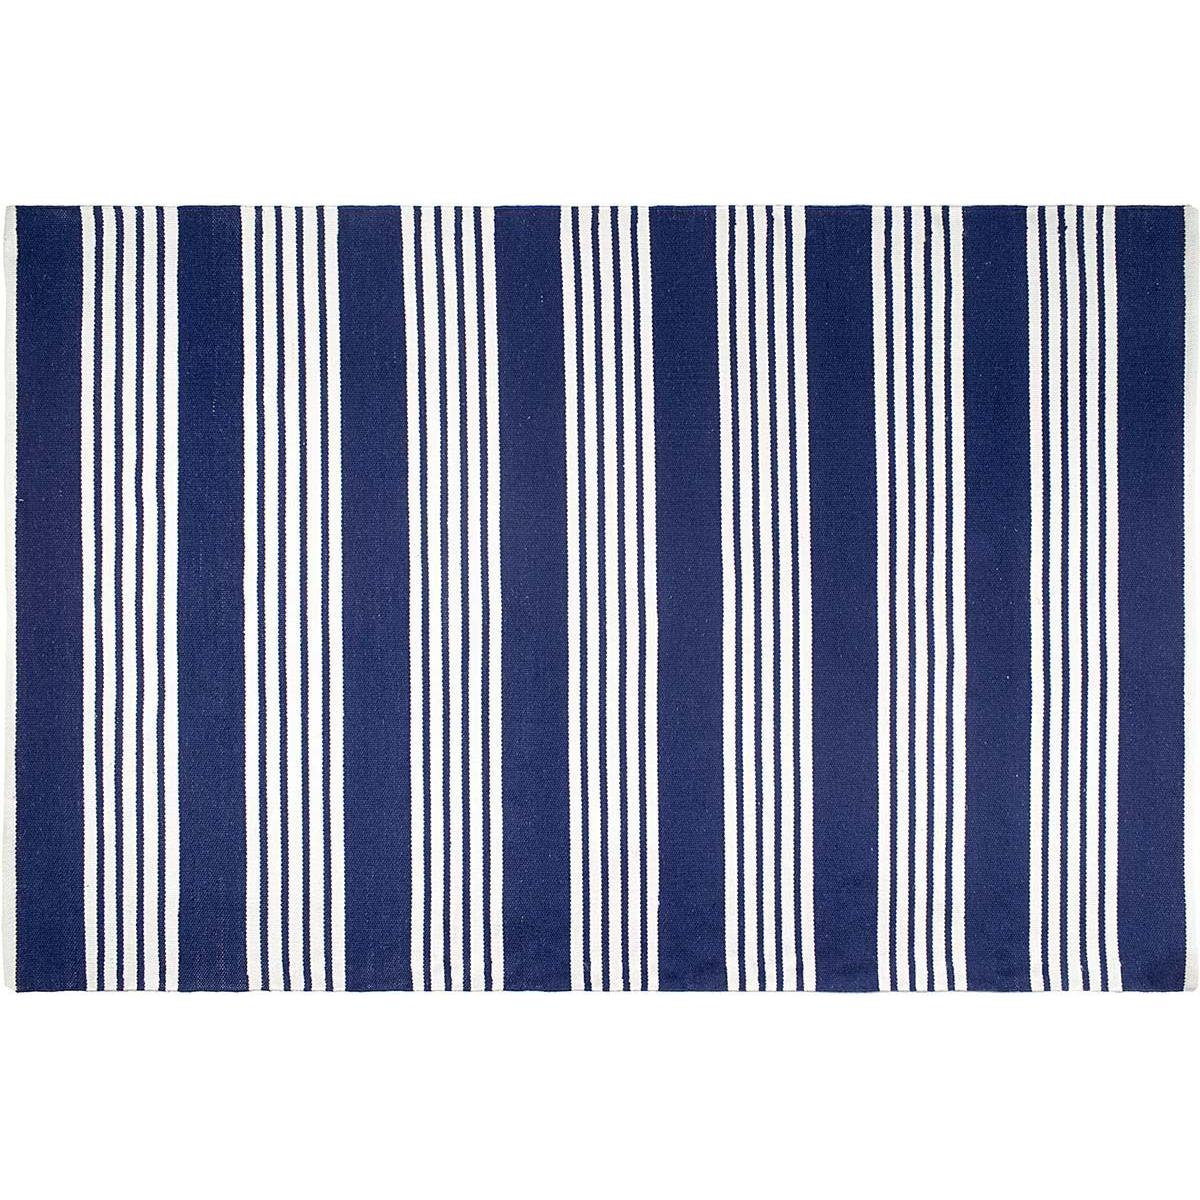 Fabhabitat - Tapis intérieur extérieur Mariona Stripe bleu et blanc 150 x 90 cm - Tapis